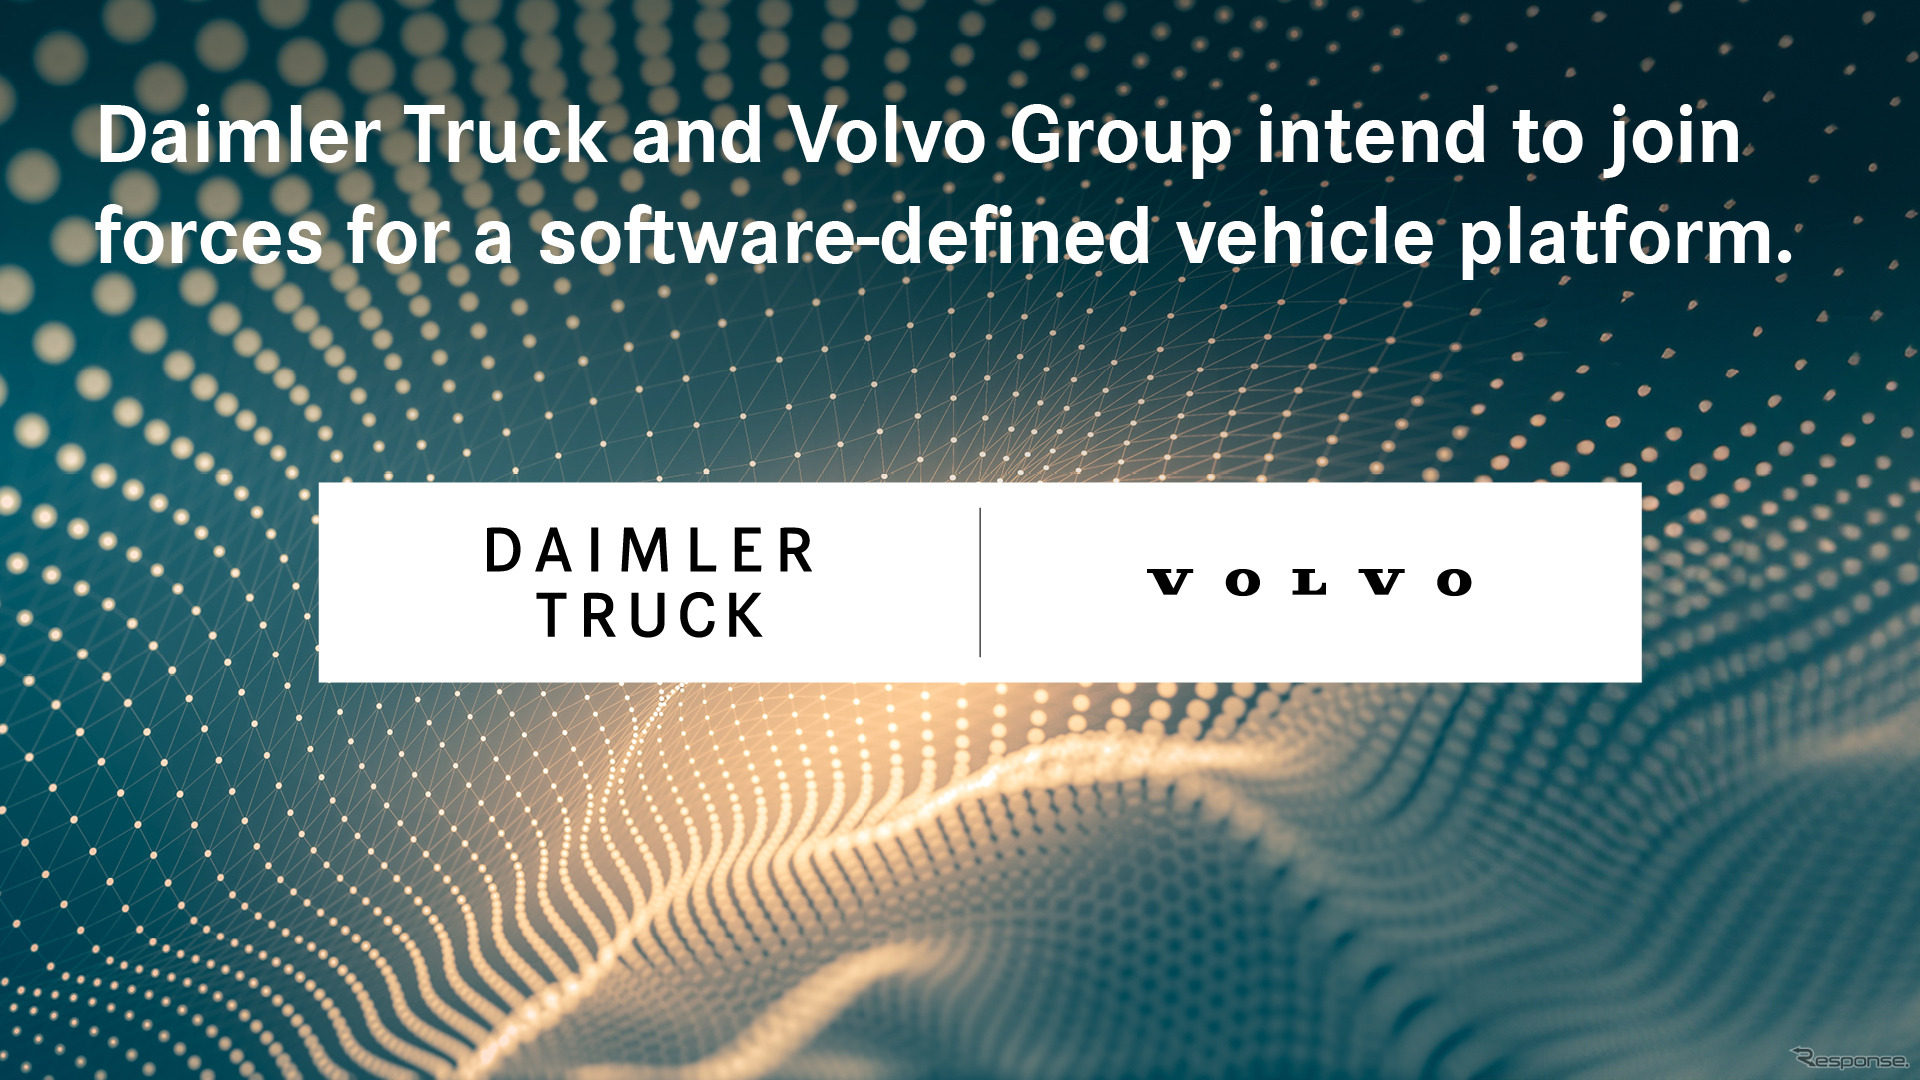 ダイムラー・トラックとボルボがソフト定義車向けプラットフォームの共同開発に向けて合弁設立で合意